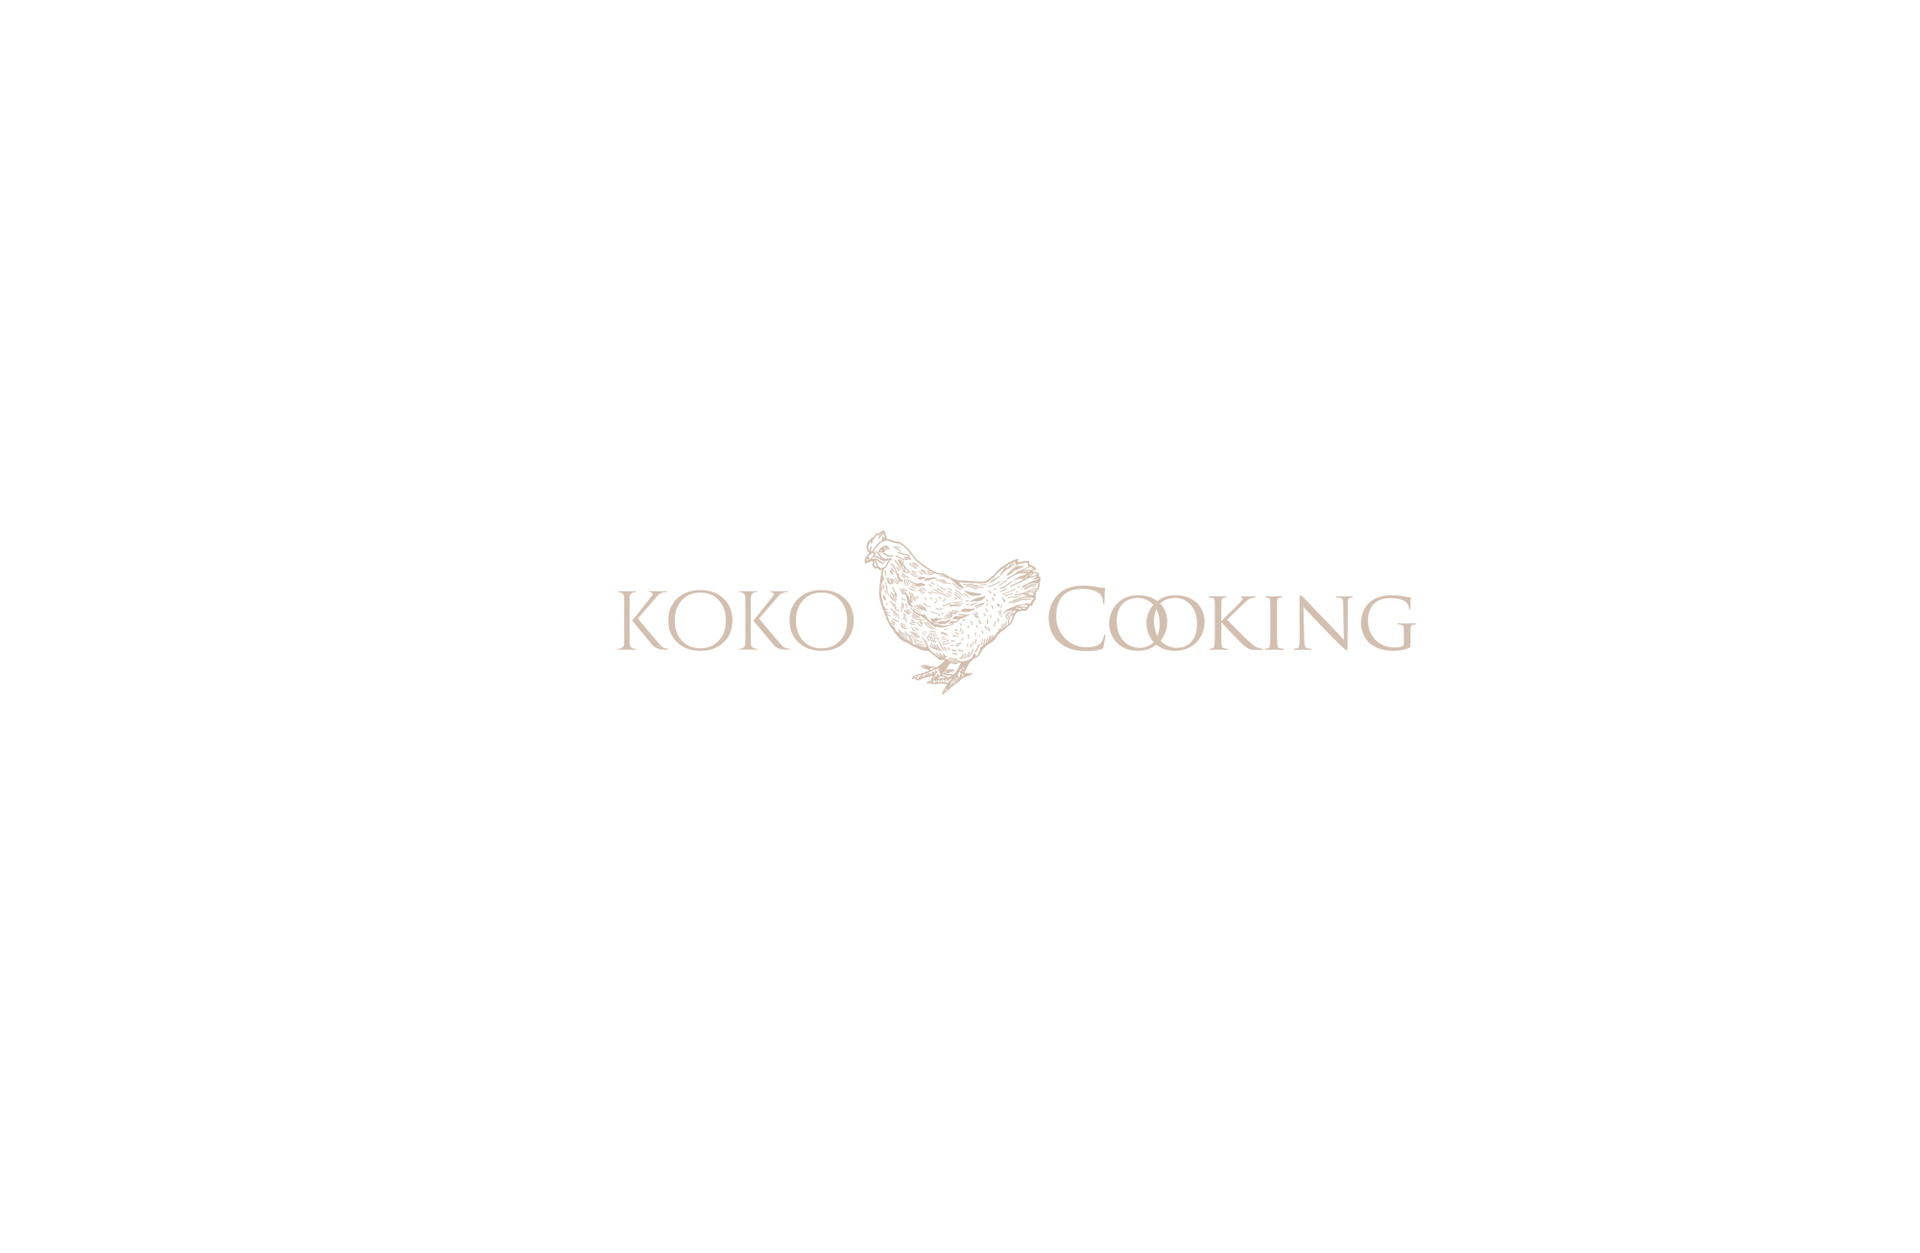 Koko Cooking